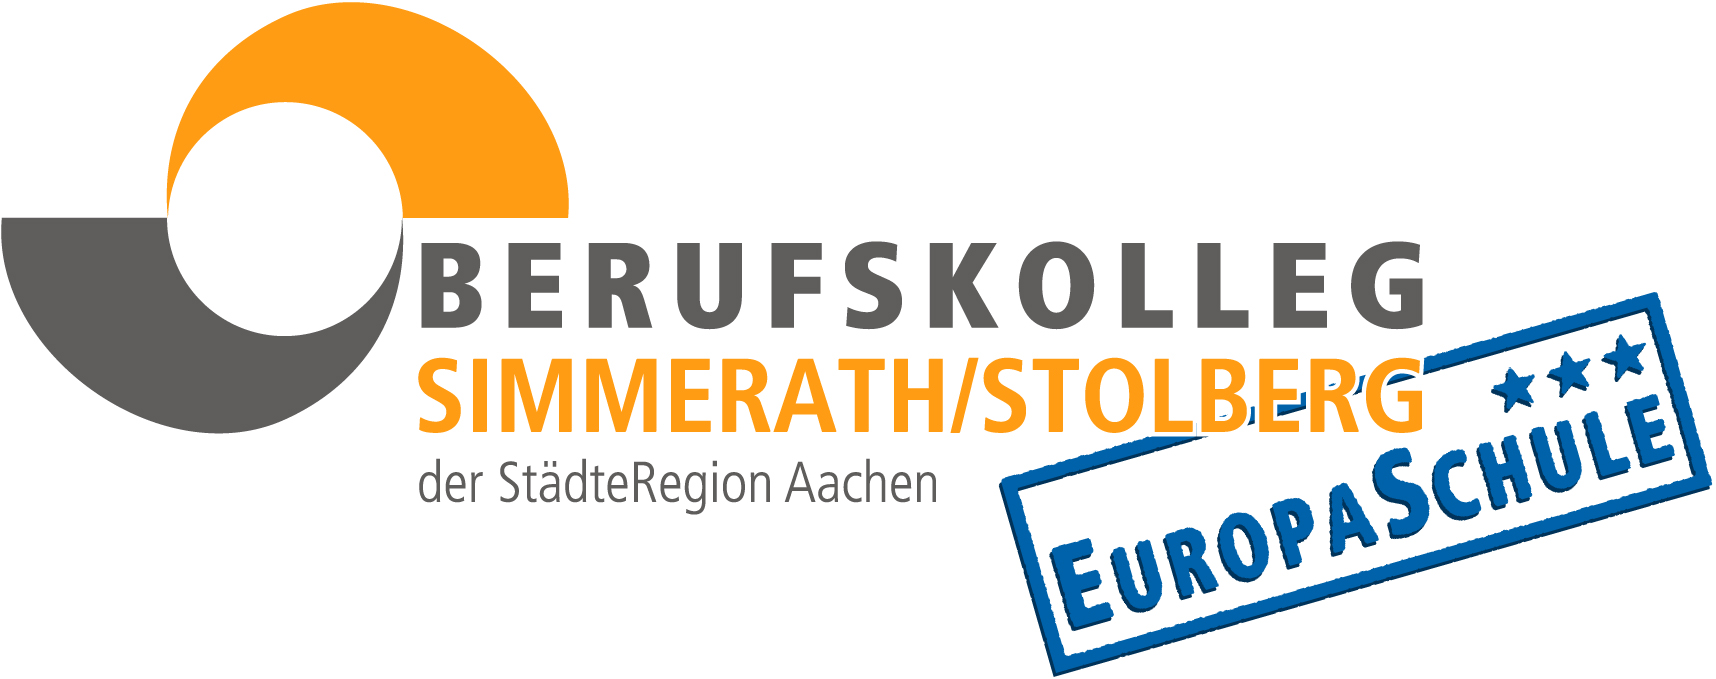 Logo der Schule: in grauer Schrift auf weißem Grund das Wort "Berufskolleg", daruter steht in orange "Simmerath/Stolberg", darunter wieder in grau "der StädteRegion Aachen". Daneben steht in blauer Schrift und umrahmt: "Europaschule" und darüber sind 3 Sterne.